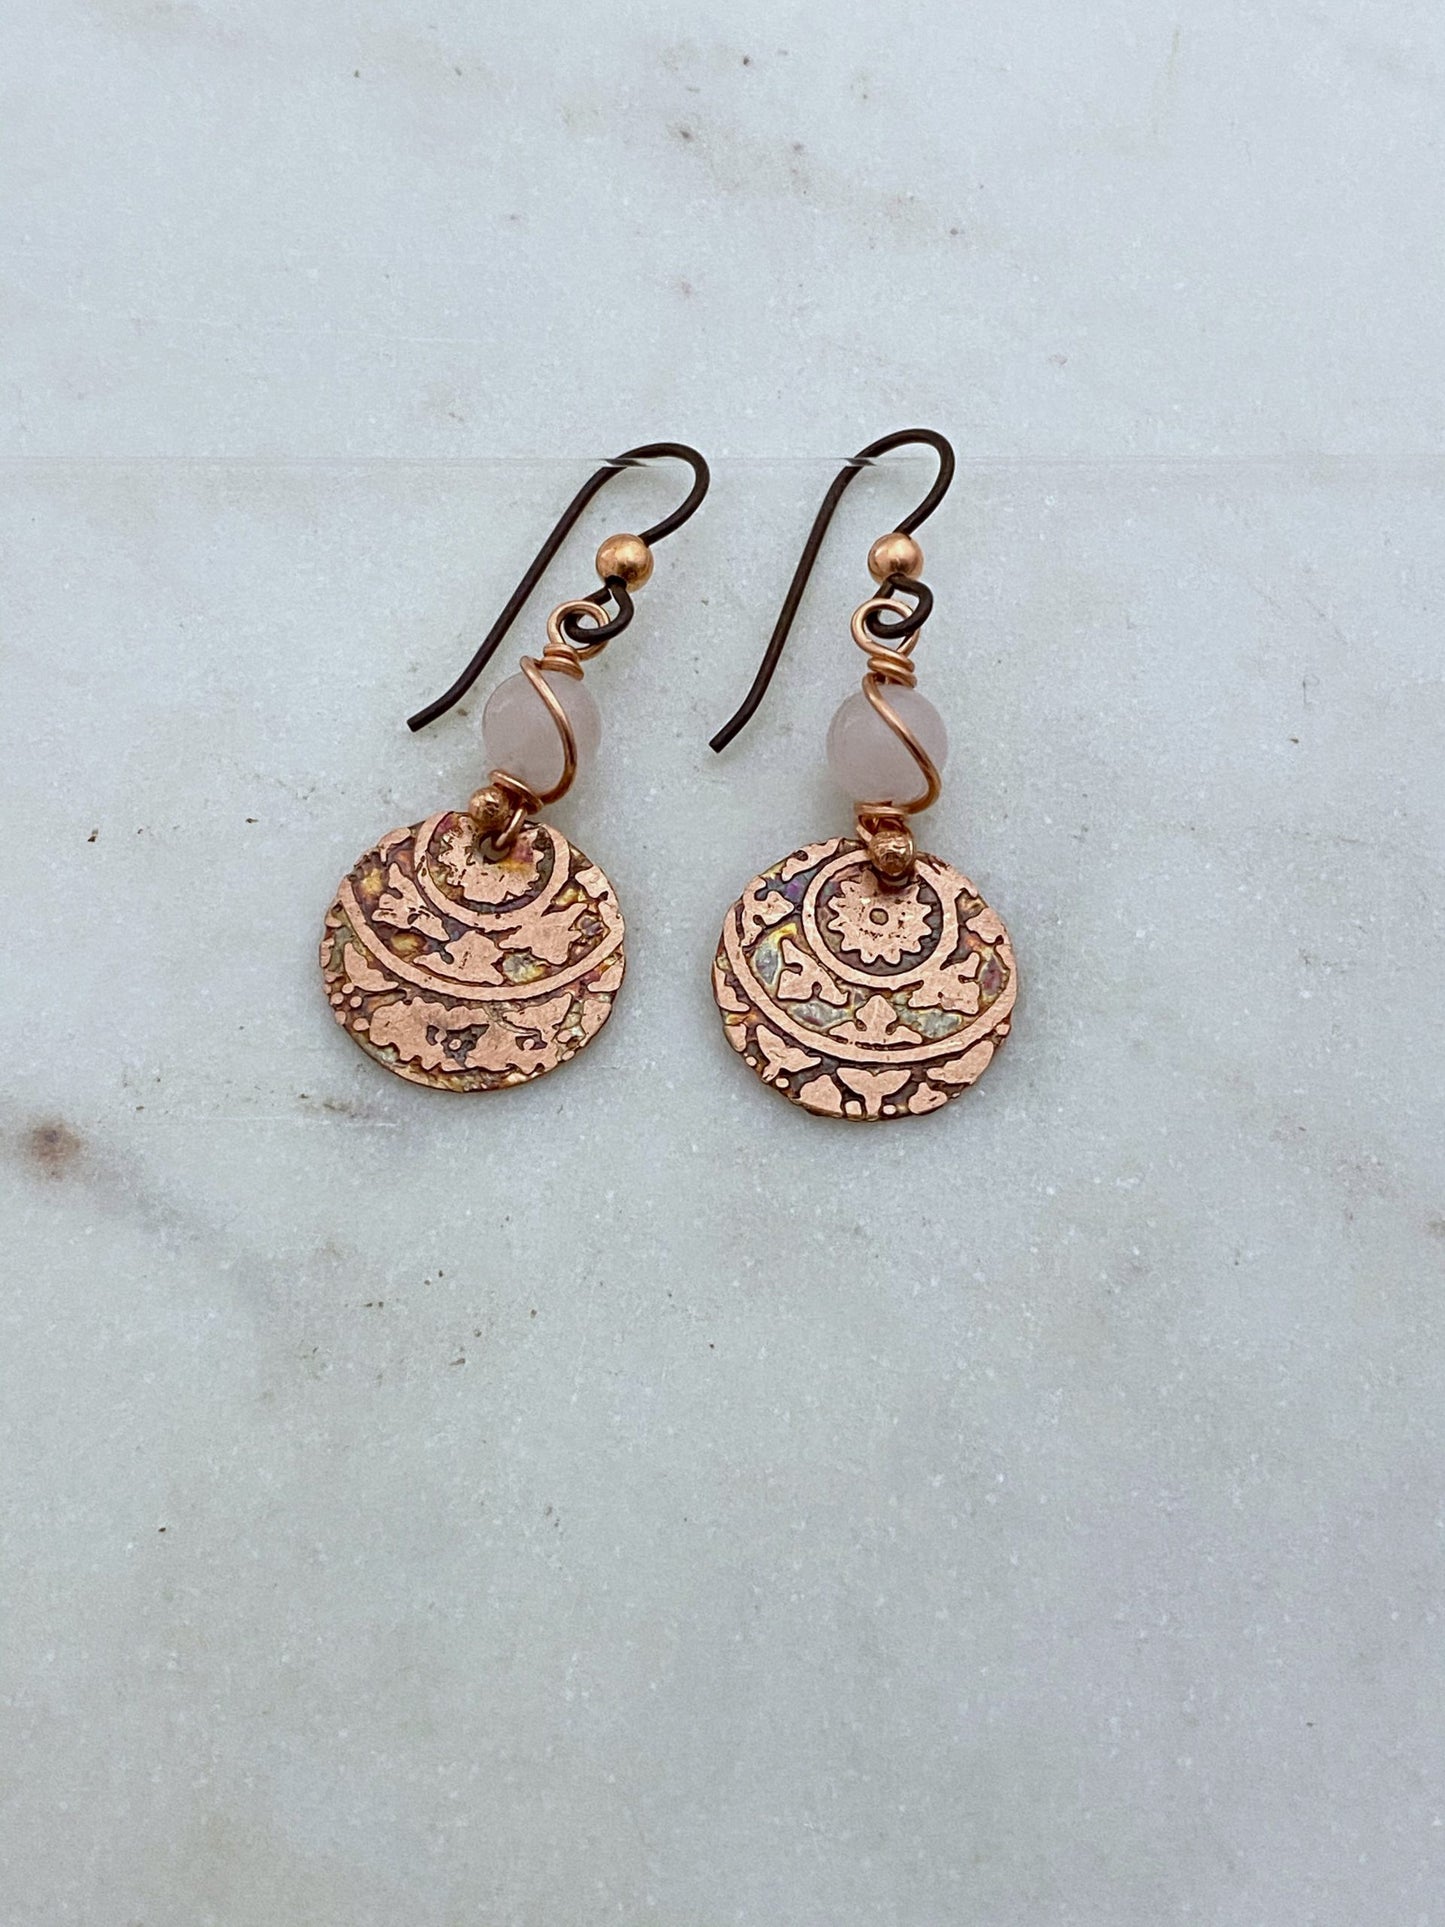 Acid etched copper mandala earrings with rose quartz